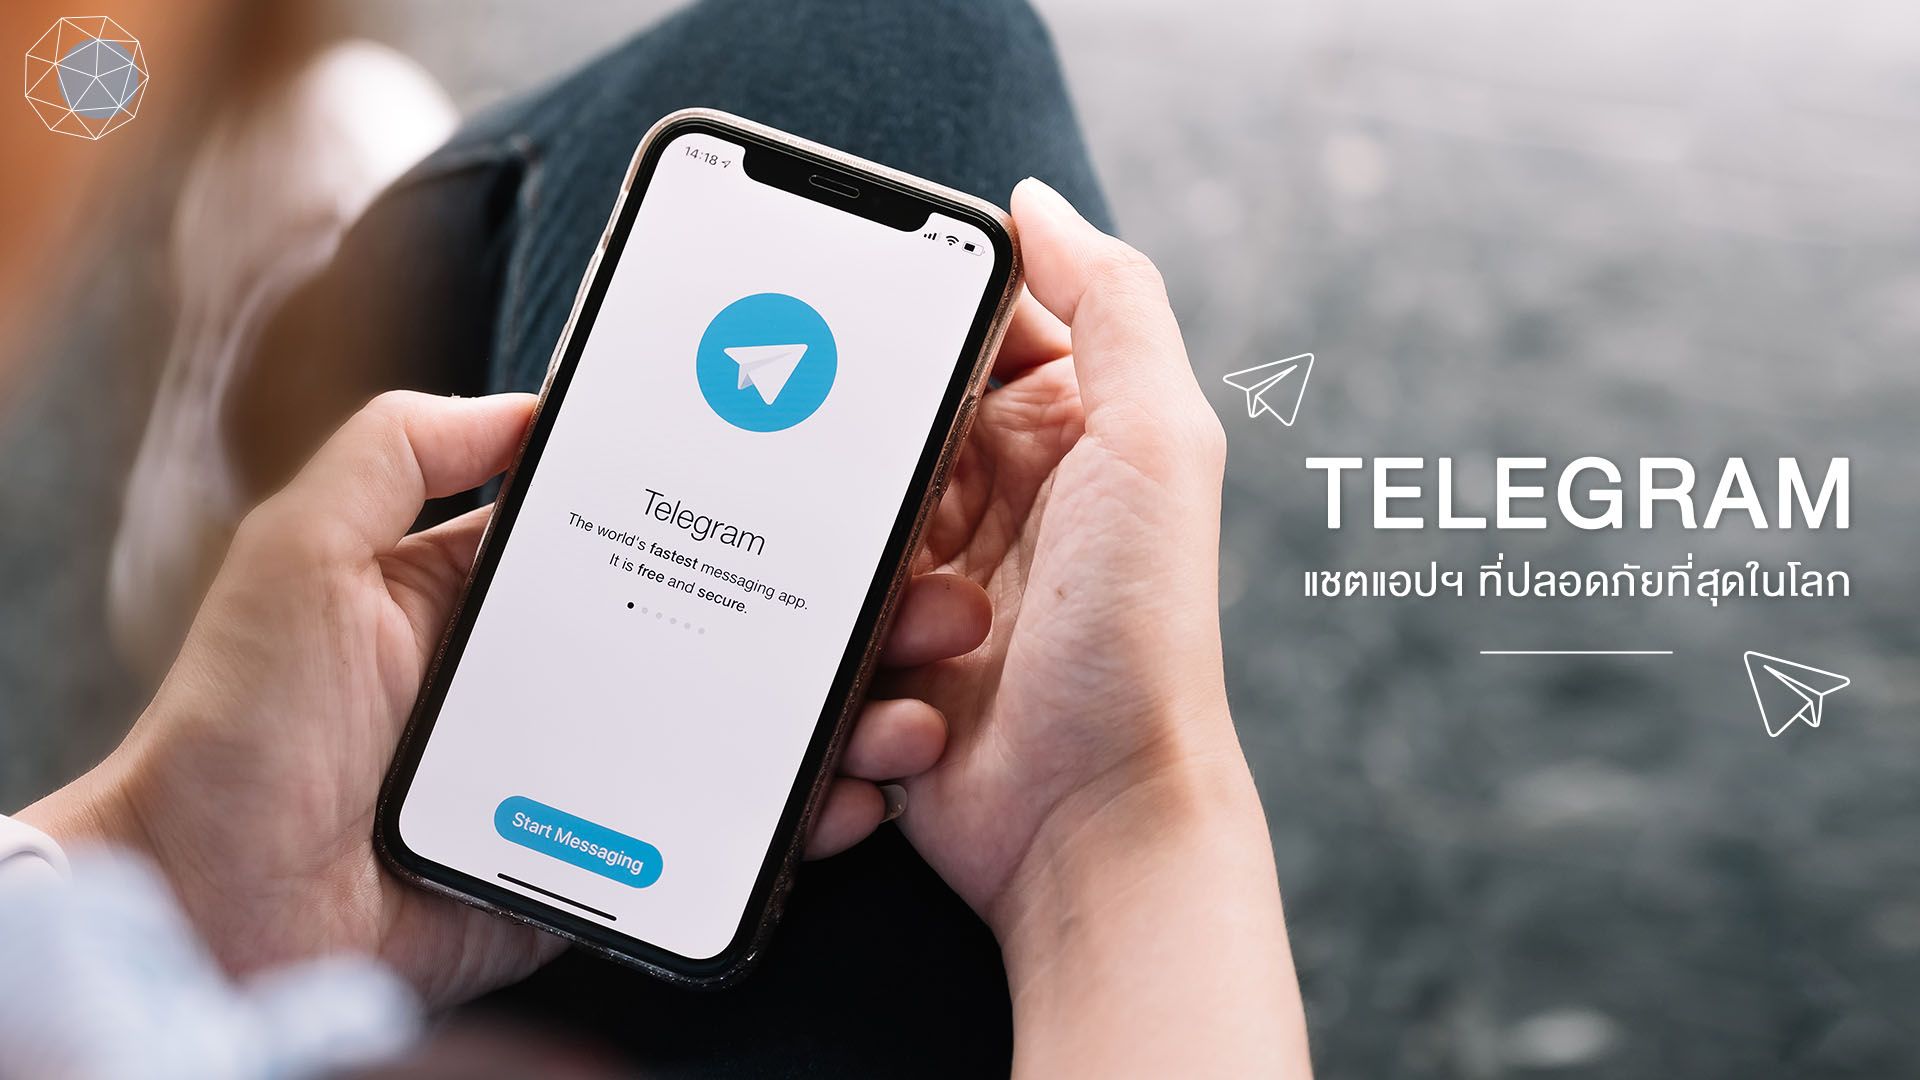 ทำไม “Telegram” เป็นแชตแอปฯ ที่ปลอดภัยที่สุดในโลก